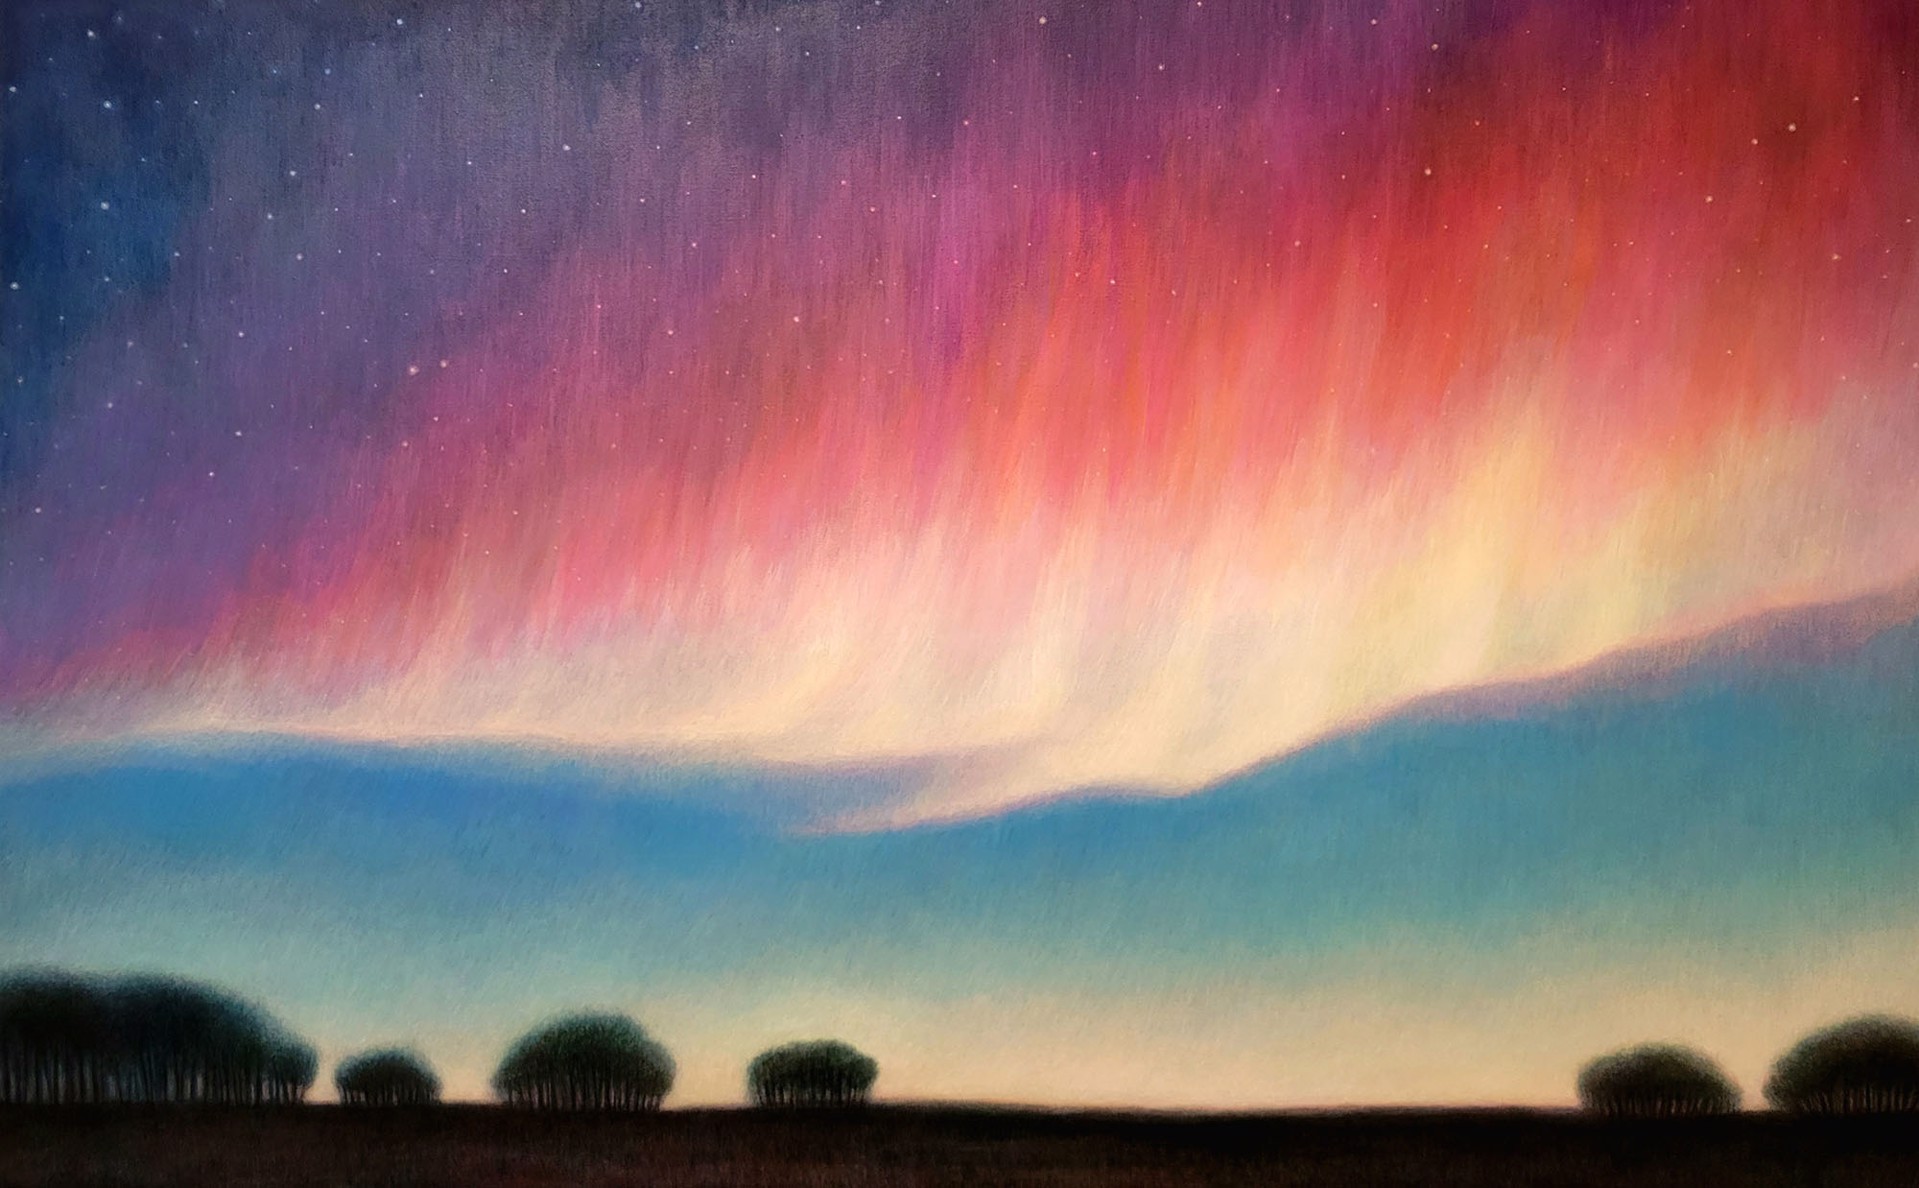 Sky Magic by Debbie Wozniak-Bonk